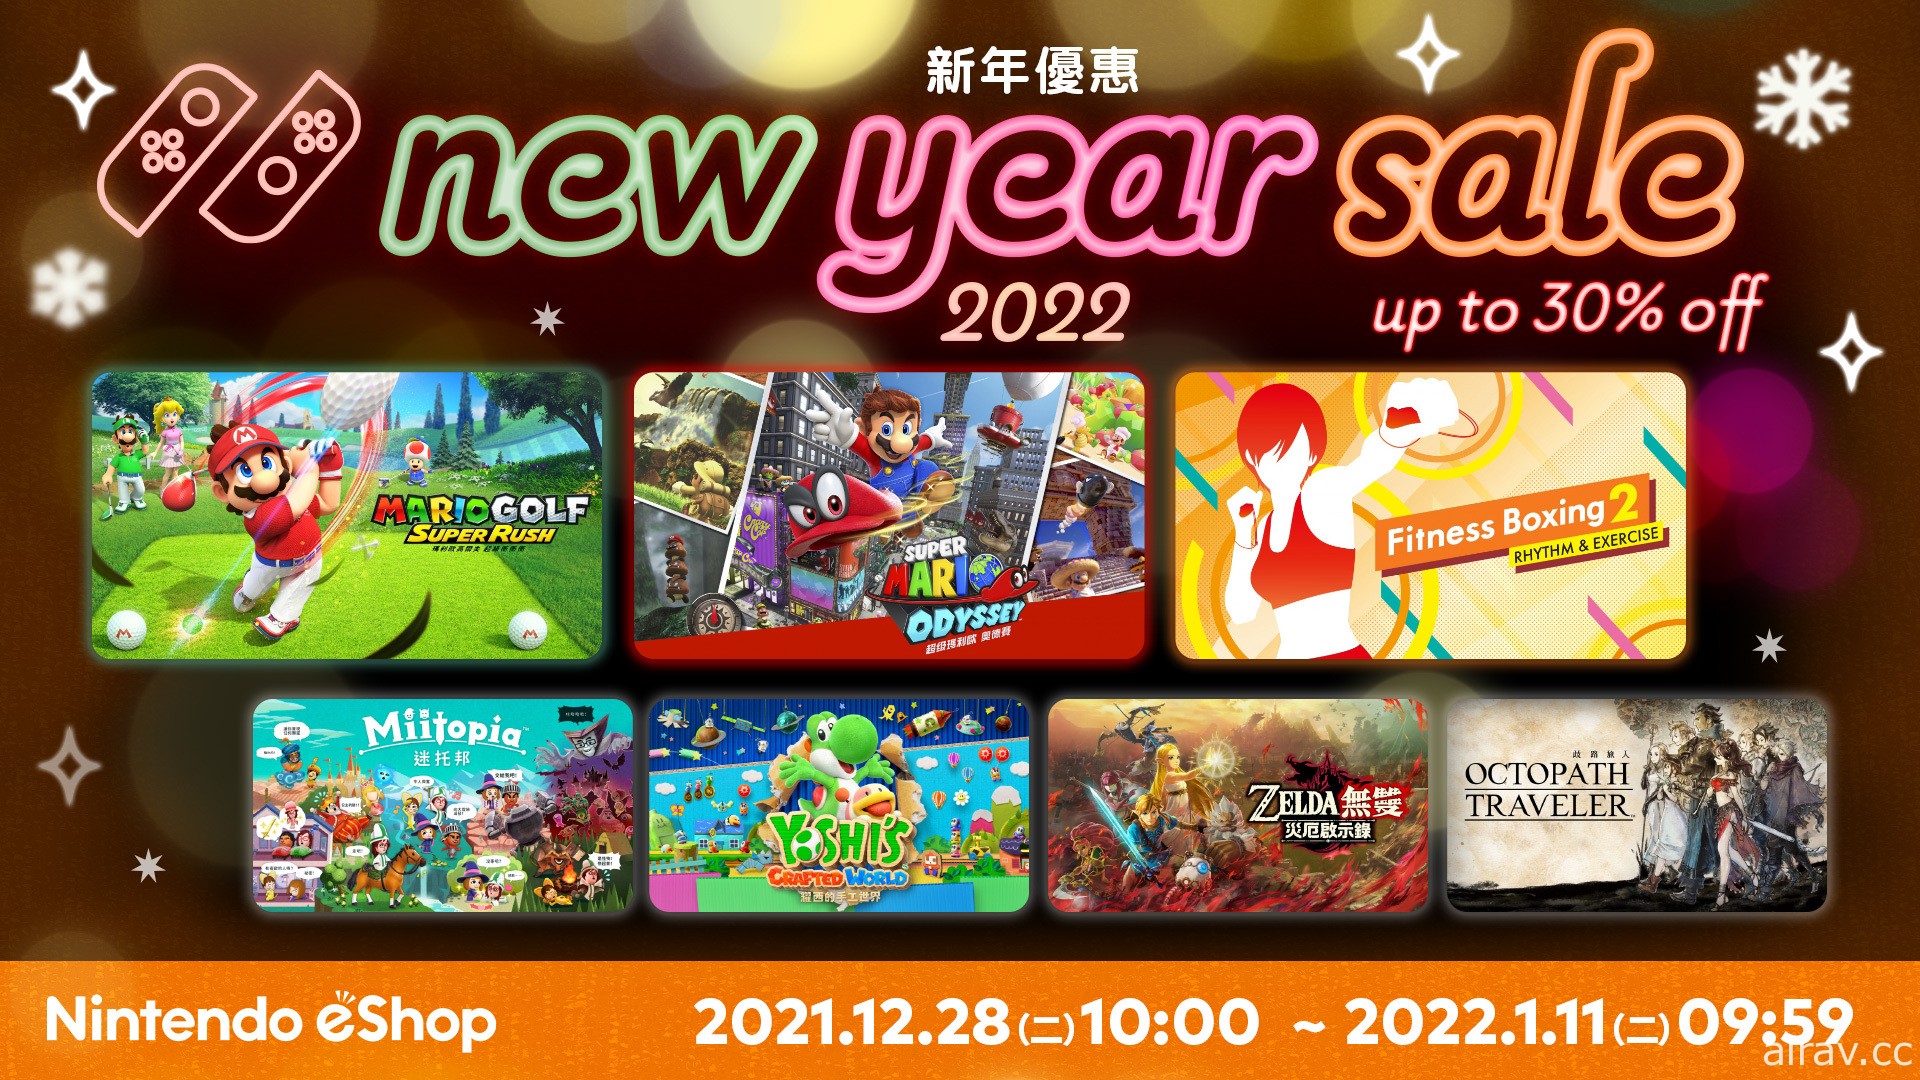 Nintendo eShop“新年优惠 2022”现已开跑 精选游戏介绍